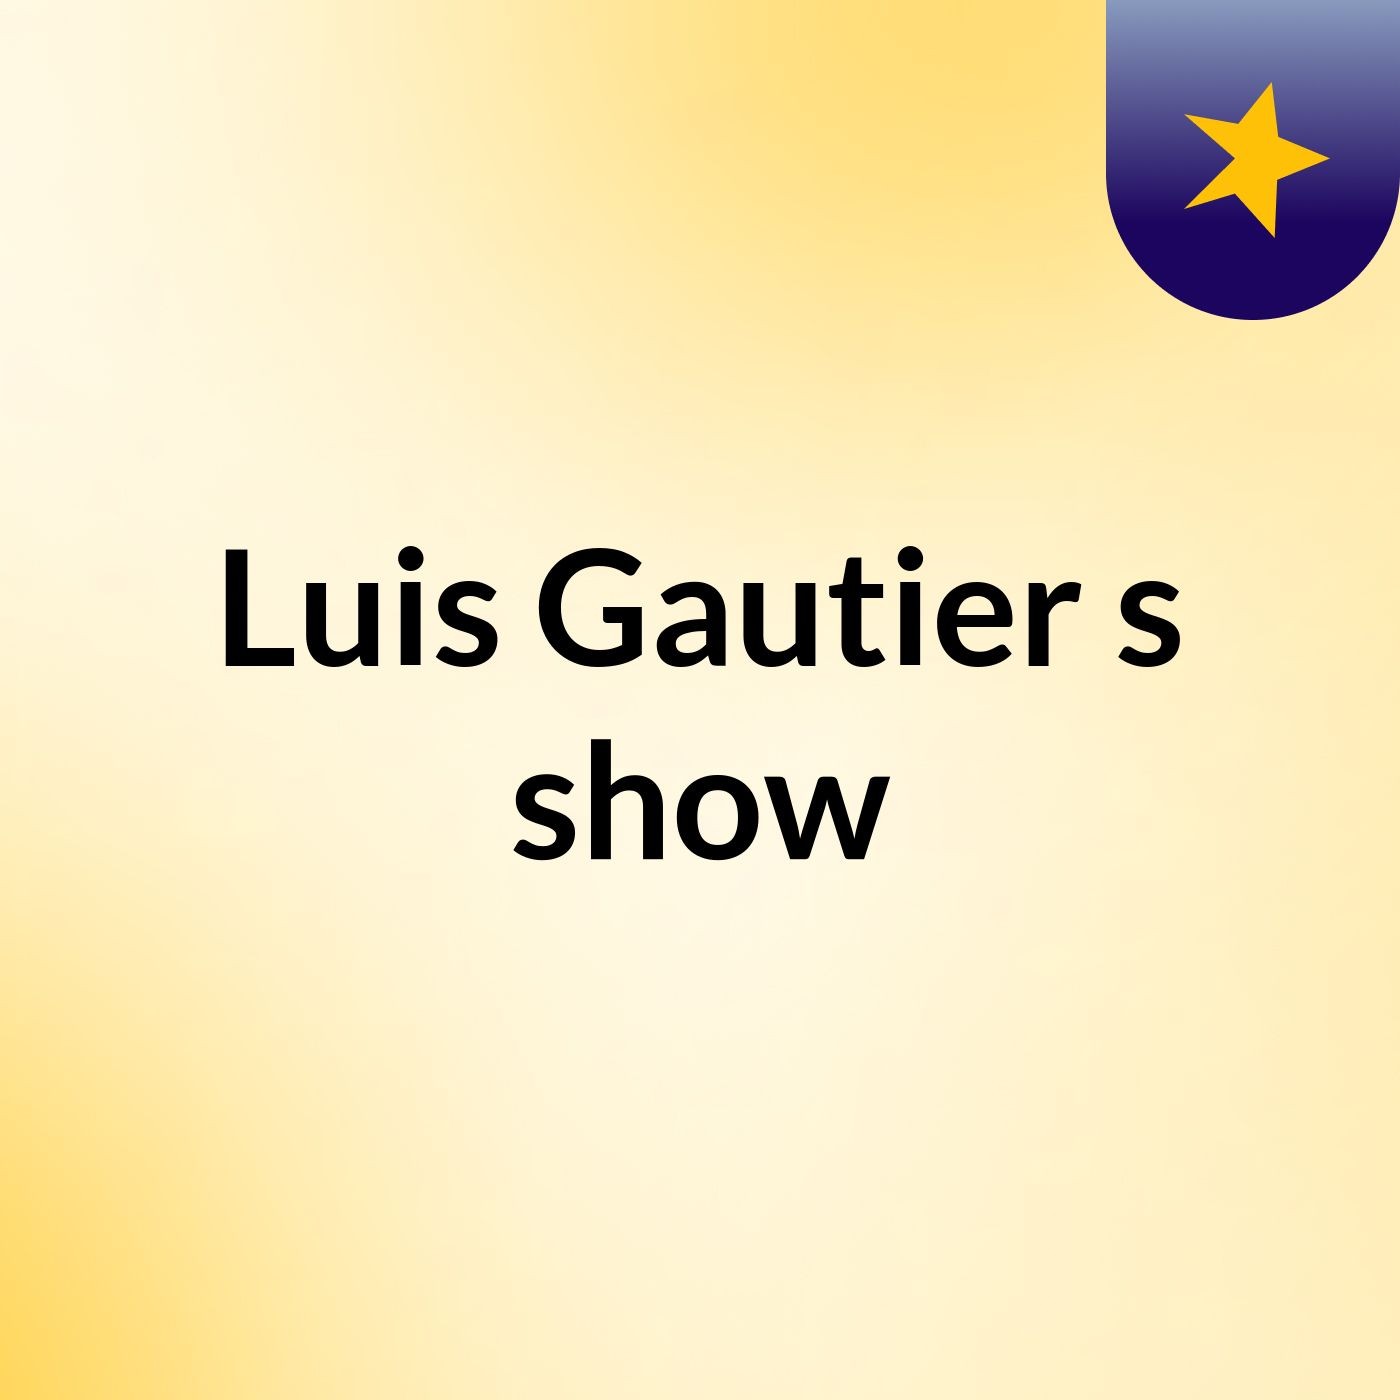 Luis Gautier's show